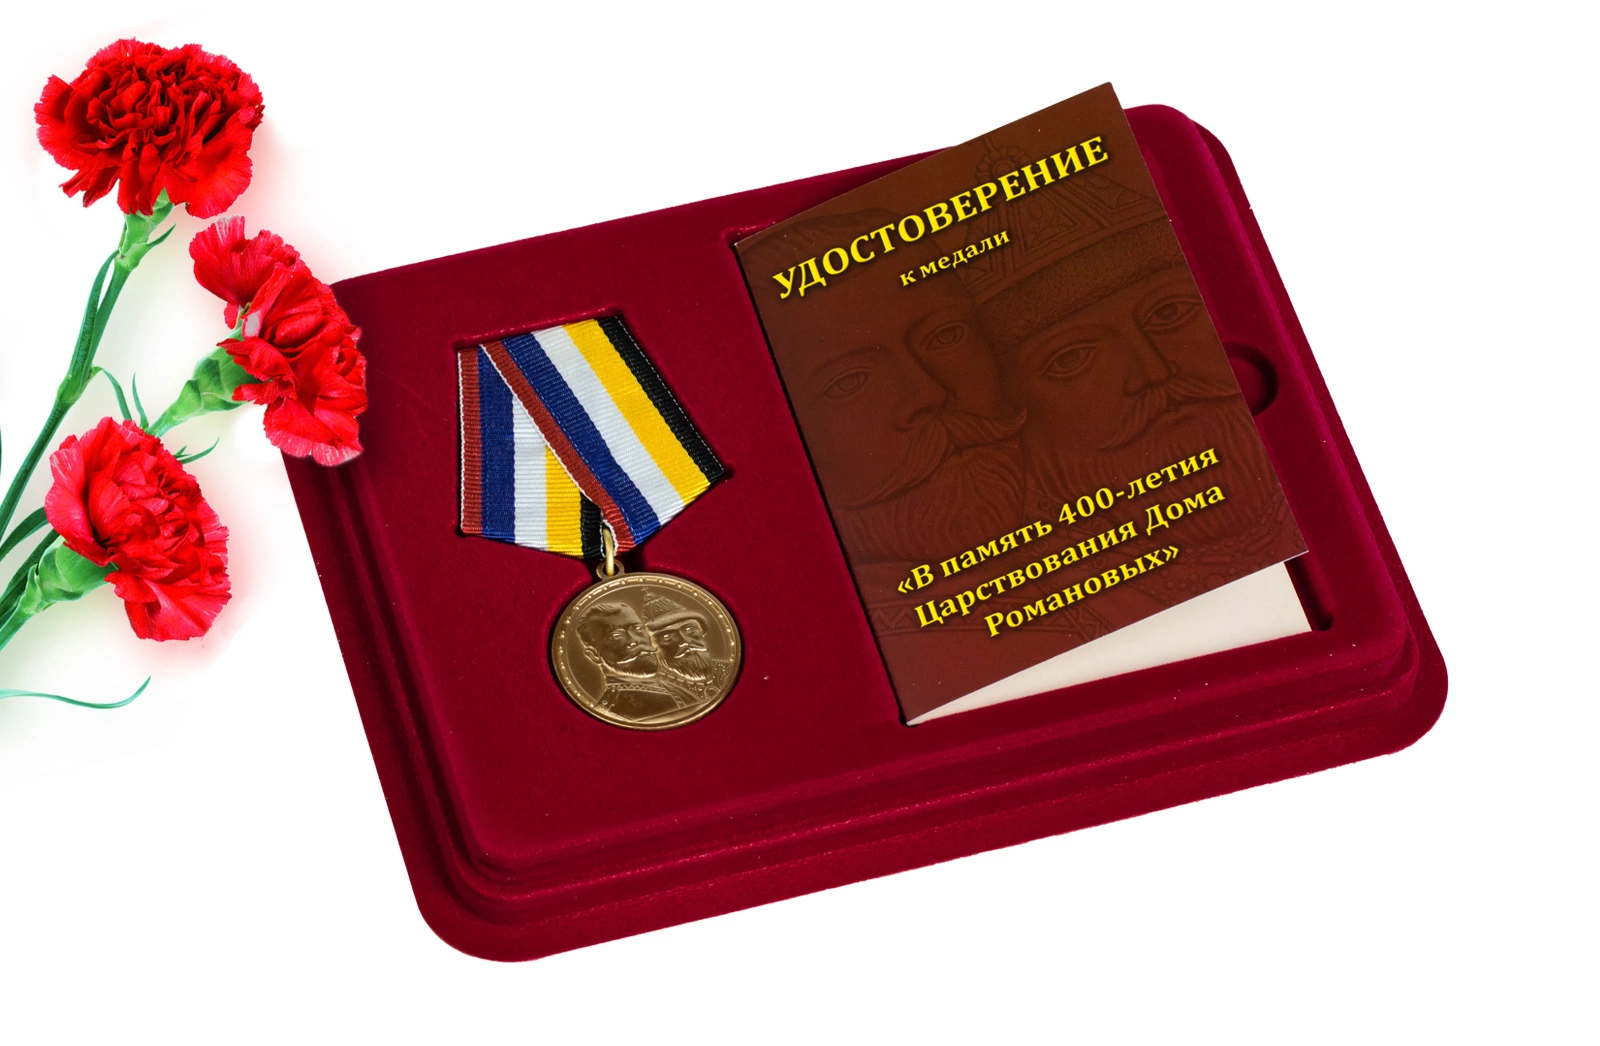 Юбилейная медаль "400 лет Дому Романовых" в футляре с отделением под удостоверение